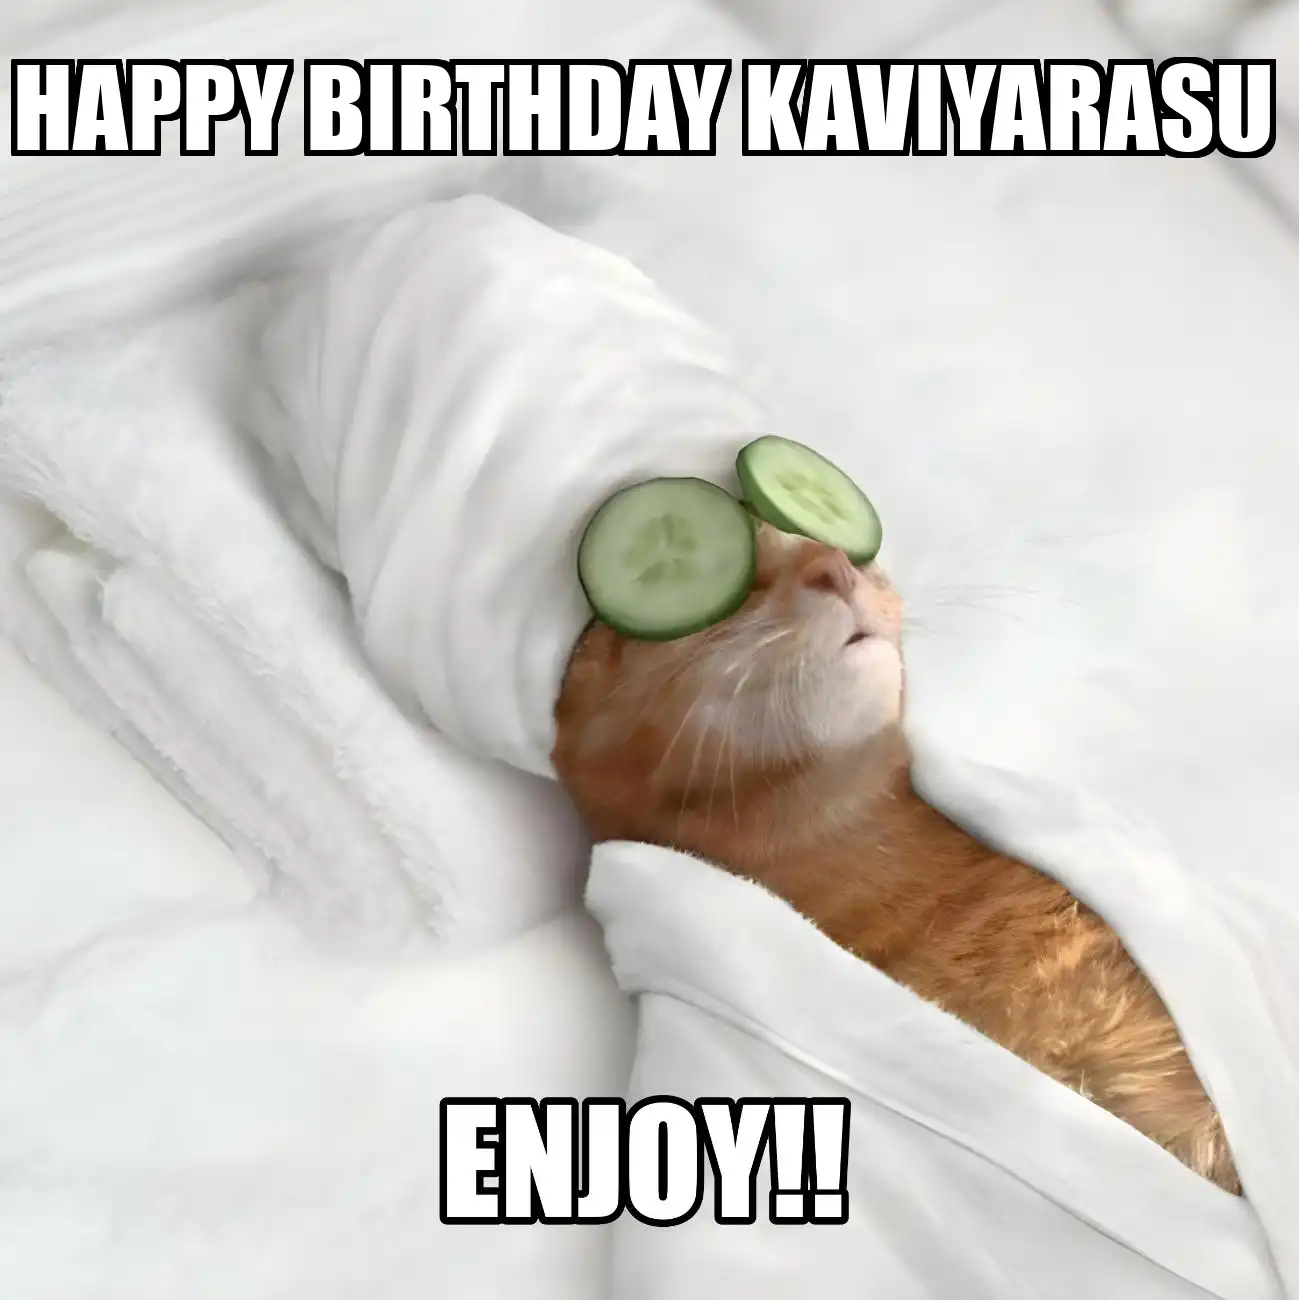 Happy Birthday Kaviyarasu Enjoy Cat Meme